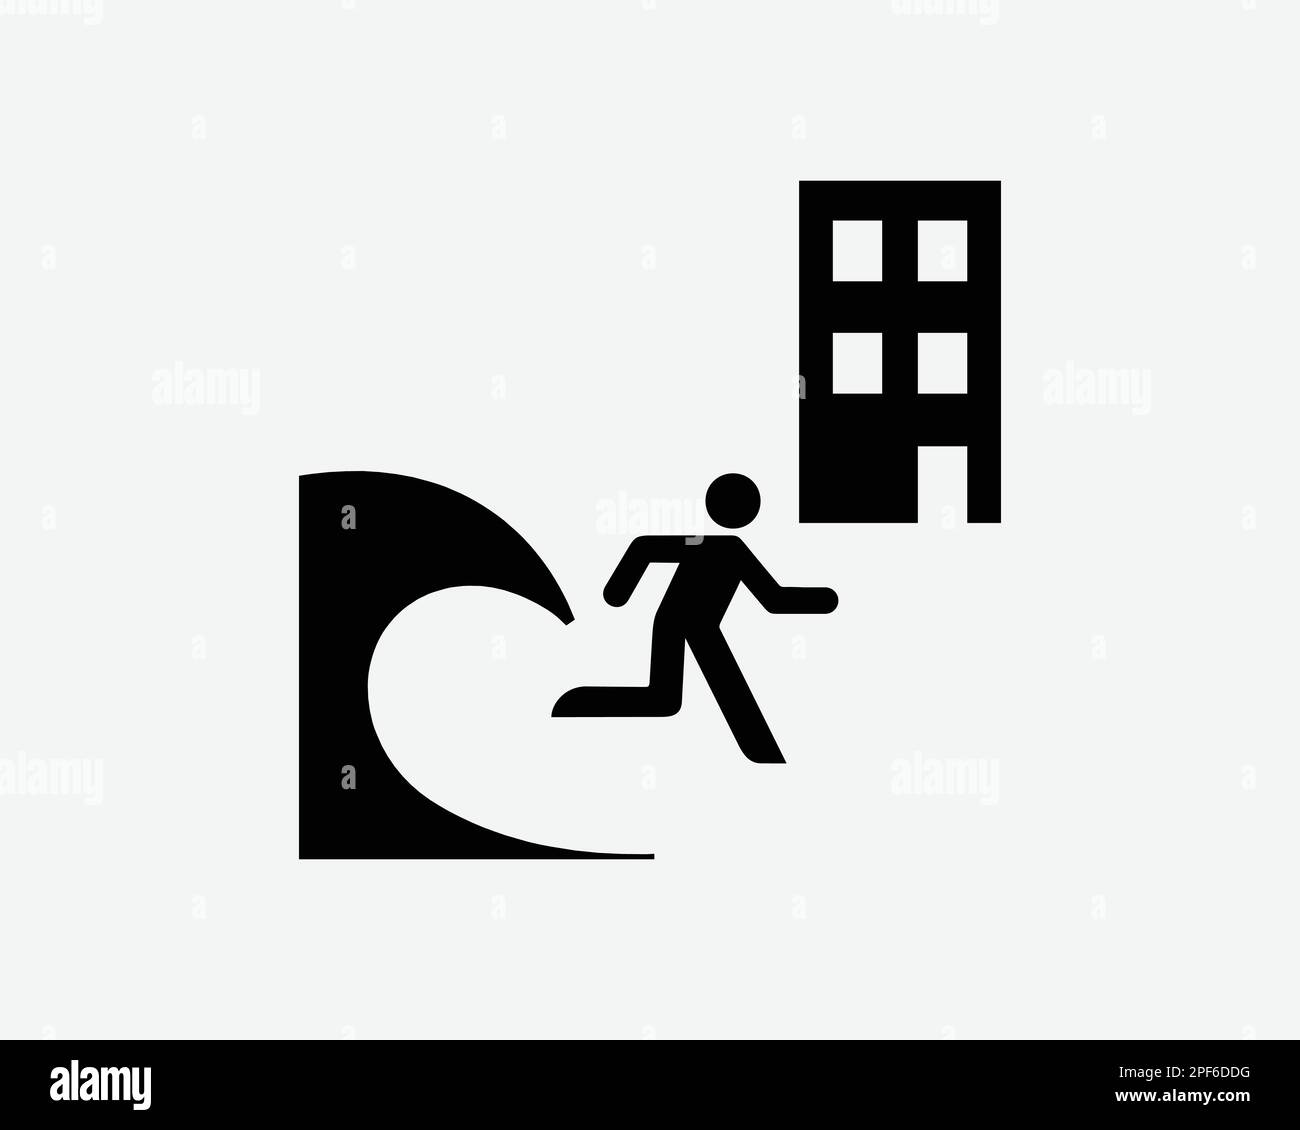 Tsunami Evacuation bâtiment abri sécurité course à pied Noir blanc Silhouette symbole icône Clipart graphique Illustration pictogramme Illustration vecteur Illustration de Vecteur